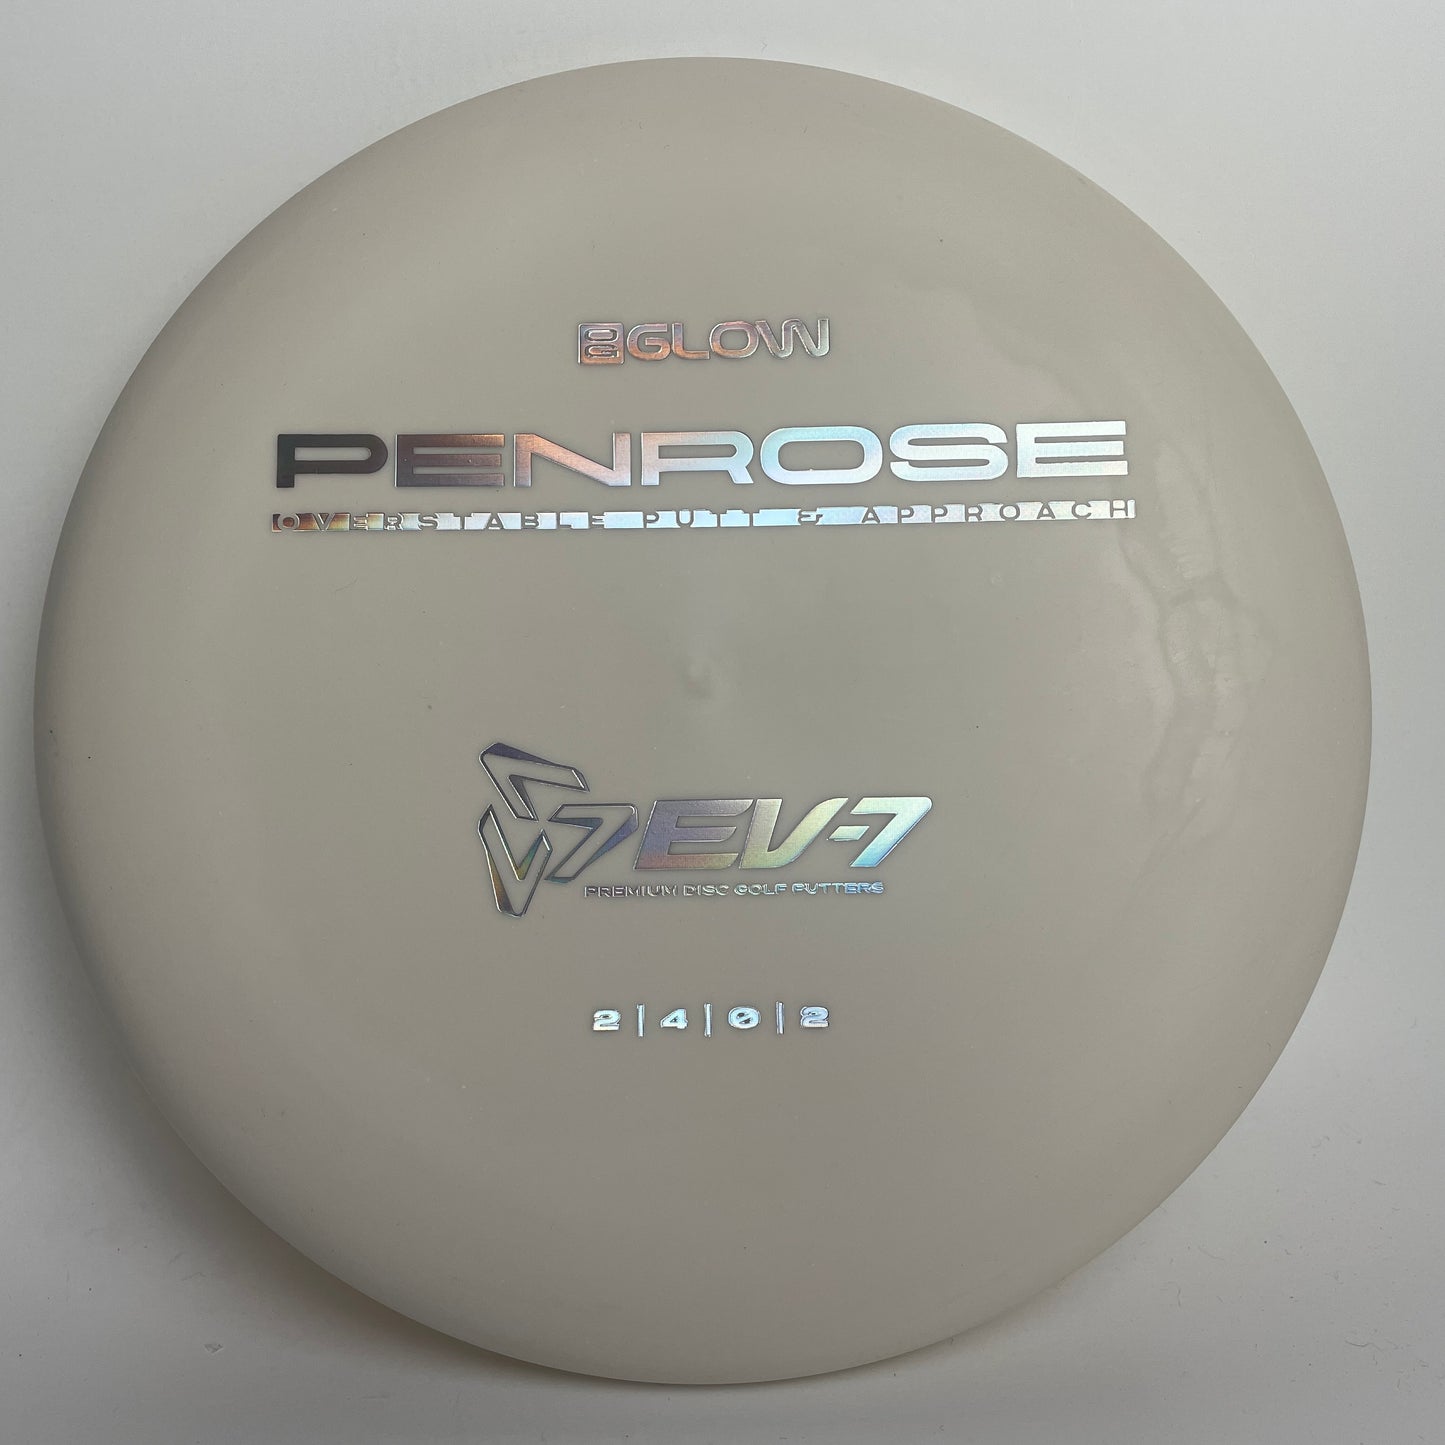 EV-7 OG Glow Penrose